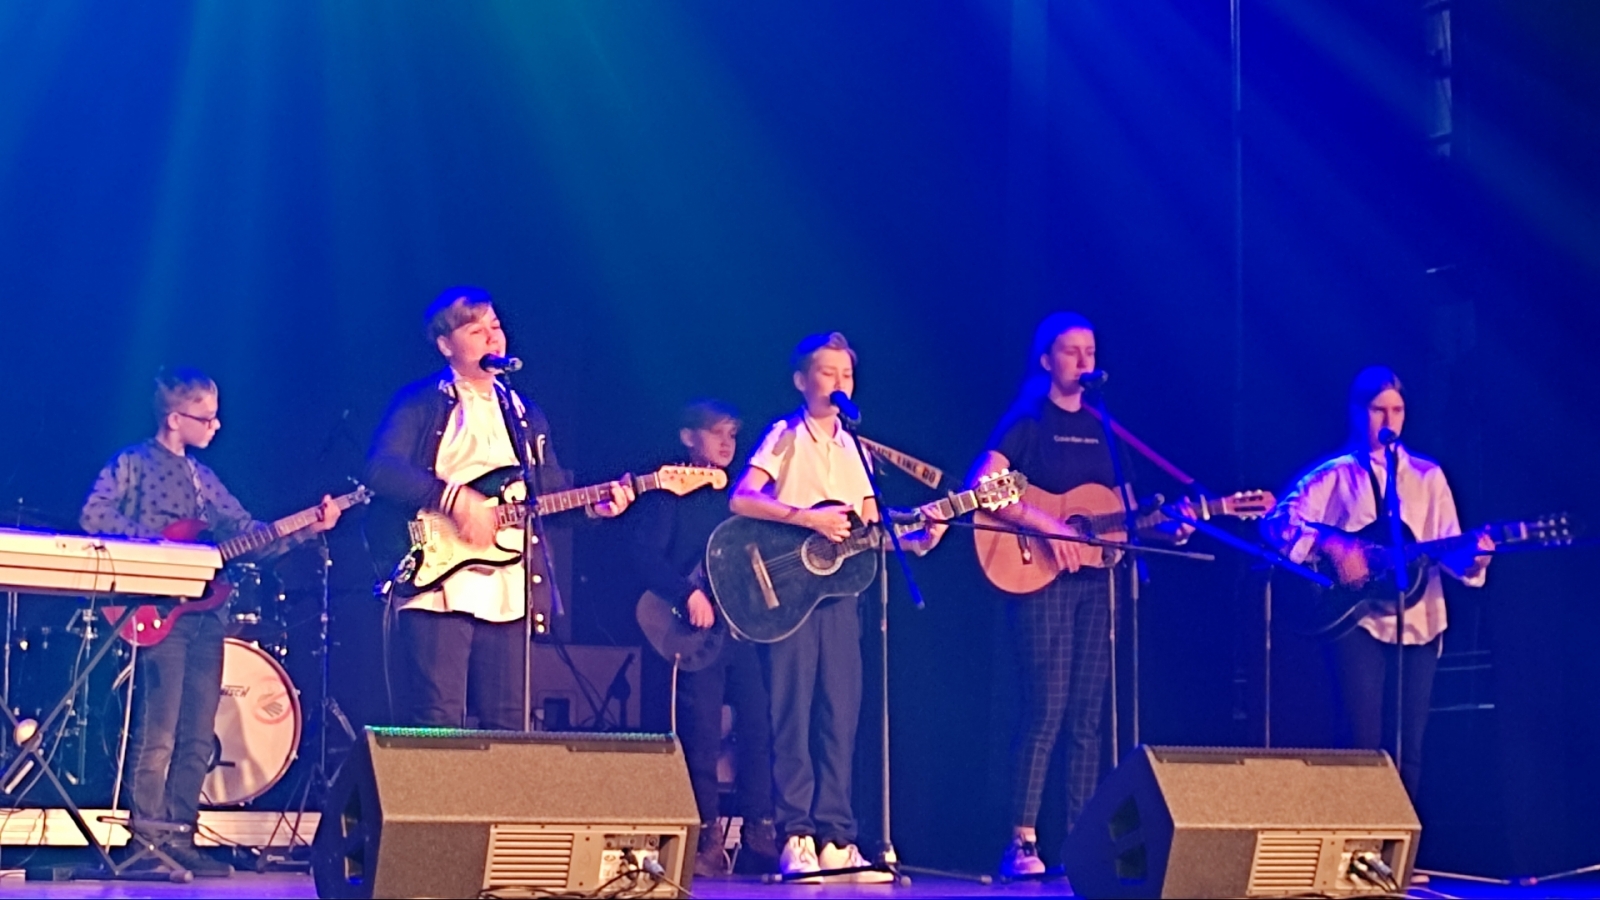 Ogres novada mazie mūzikas kolektīvi piedalās konkursā Lielvārdē